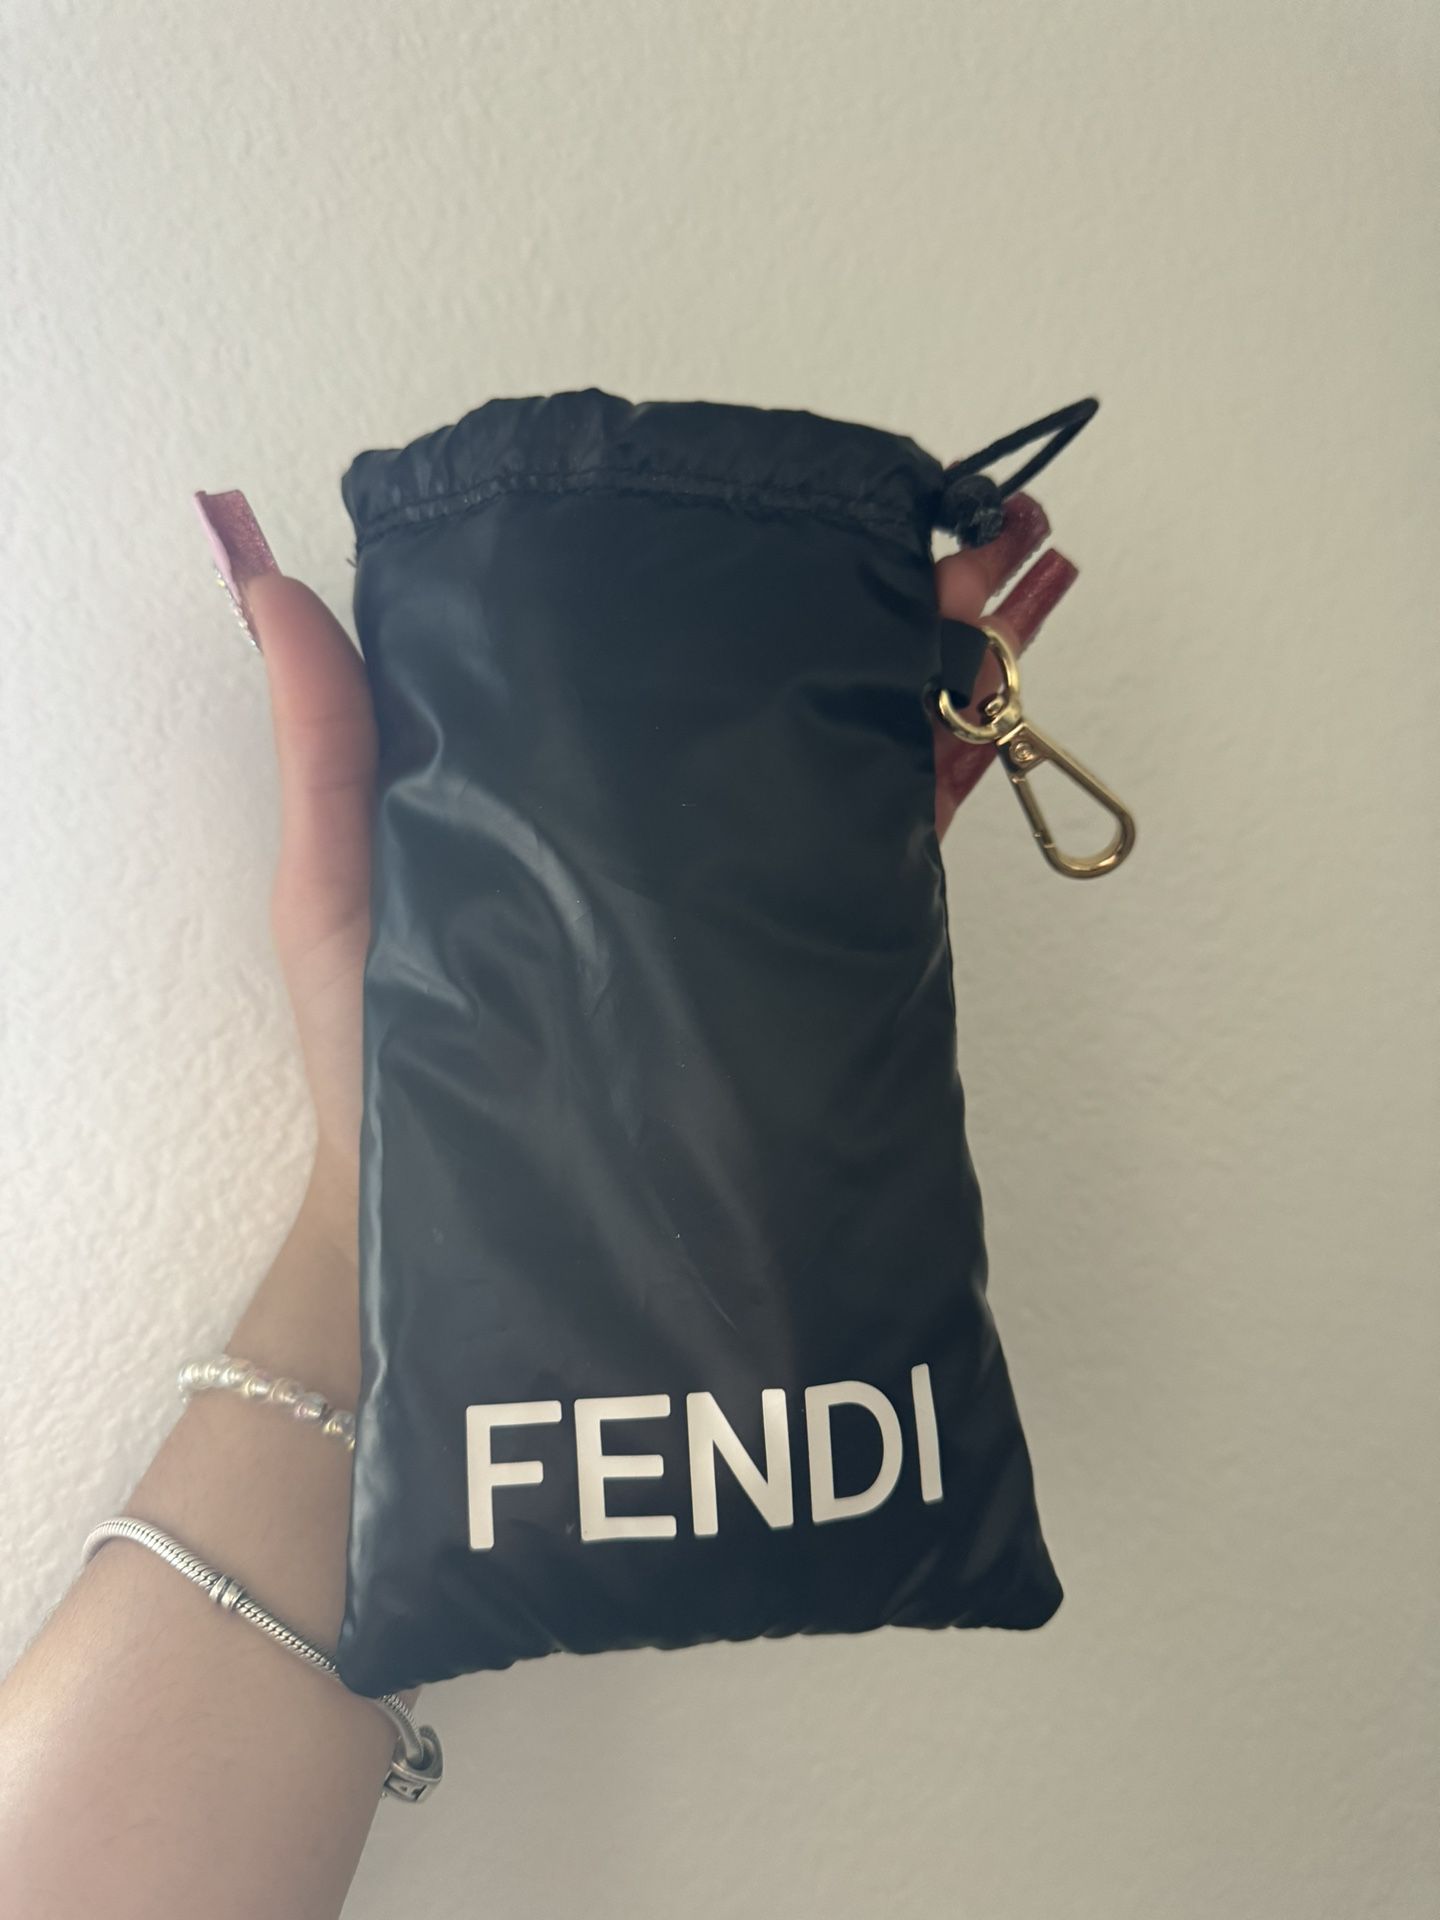 Fendi bag for glasses (NO GLASSES)